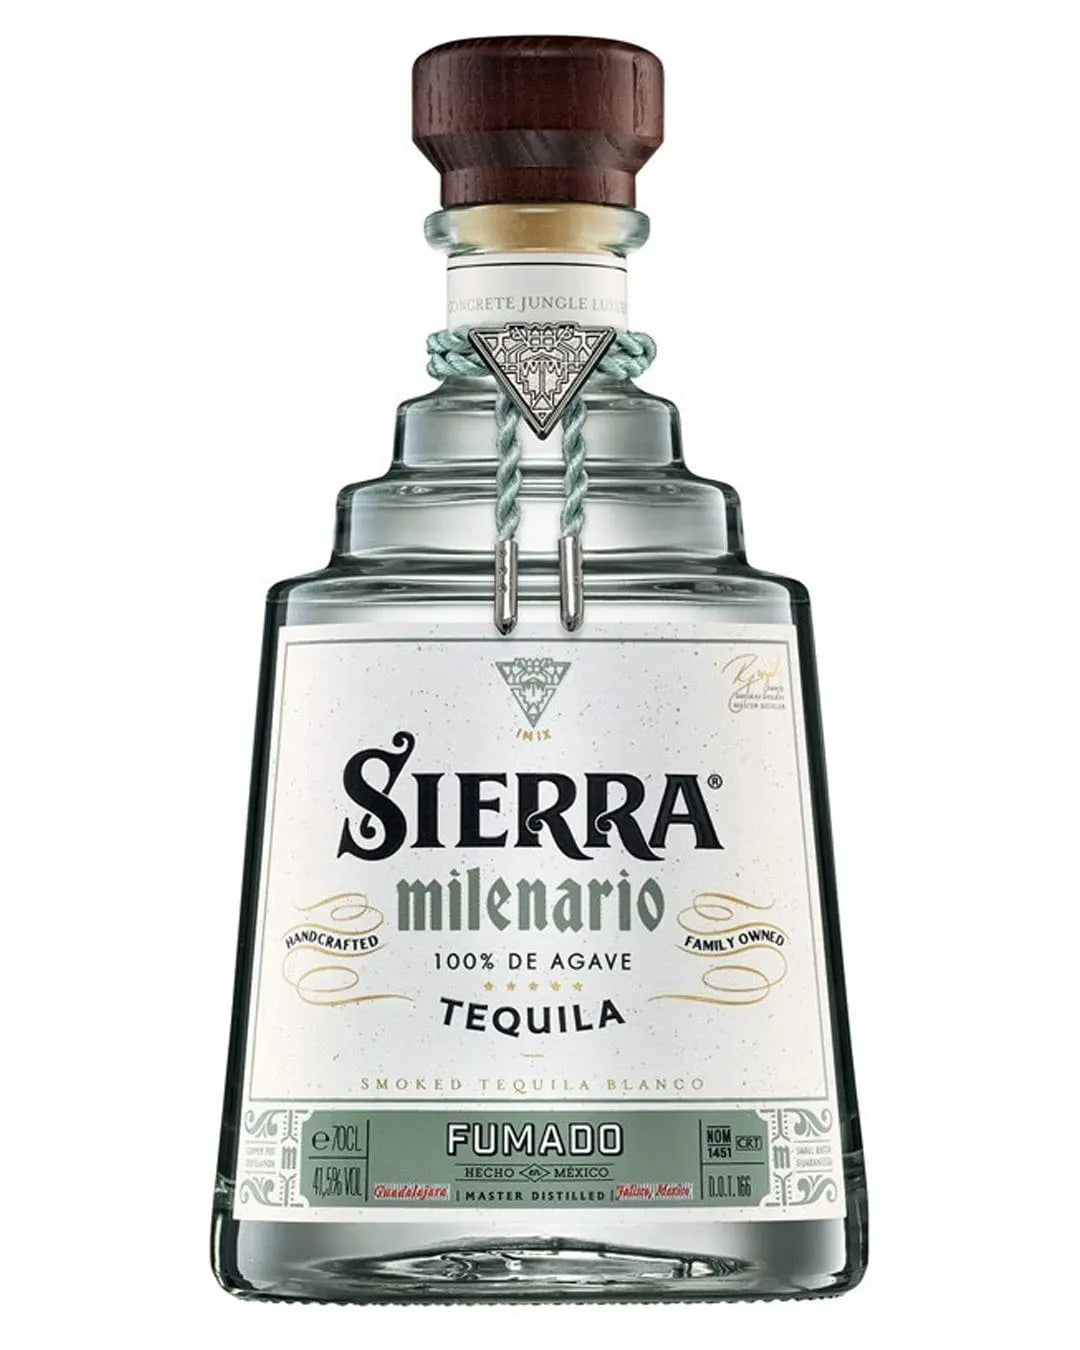 Sierra Milenario Fumado Blanco Tequila, 70 cl Tequila & Mezcal 4062400100403